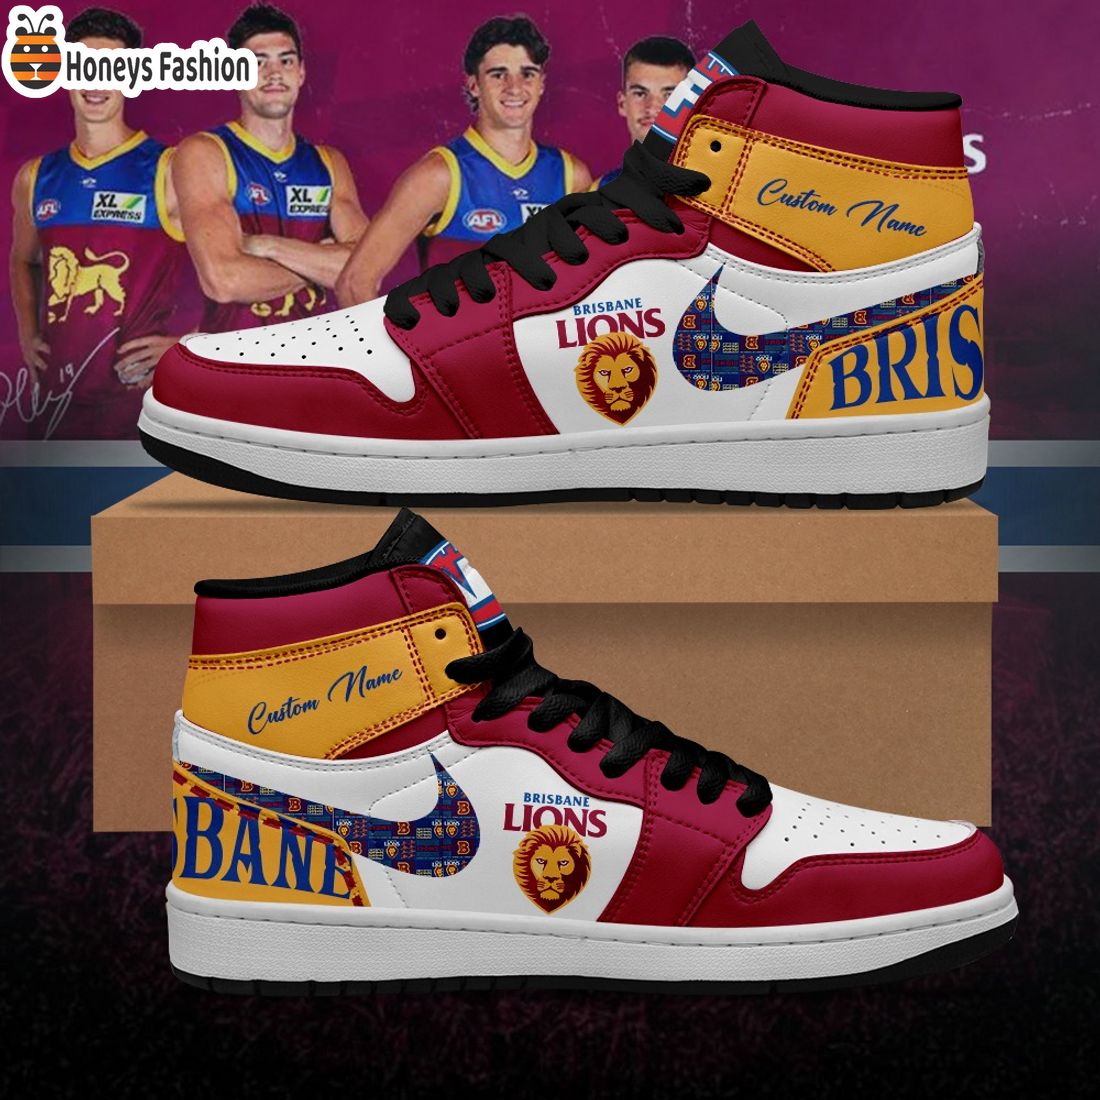 Brisbane Lions Football Club Custom Name Air Jordan 1 Sneaker